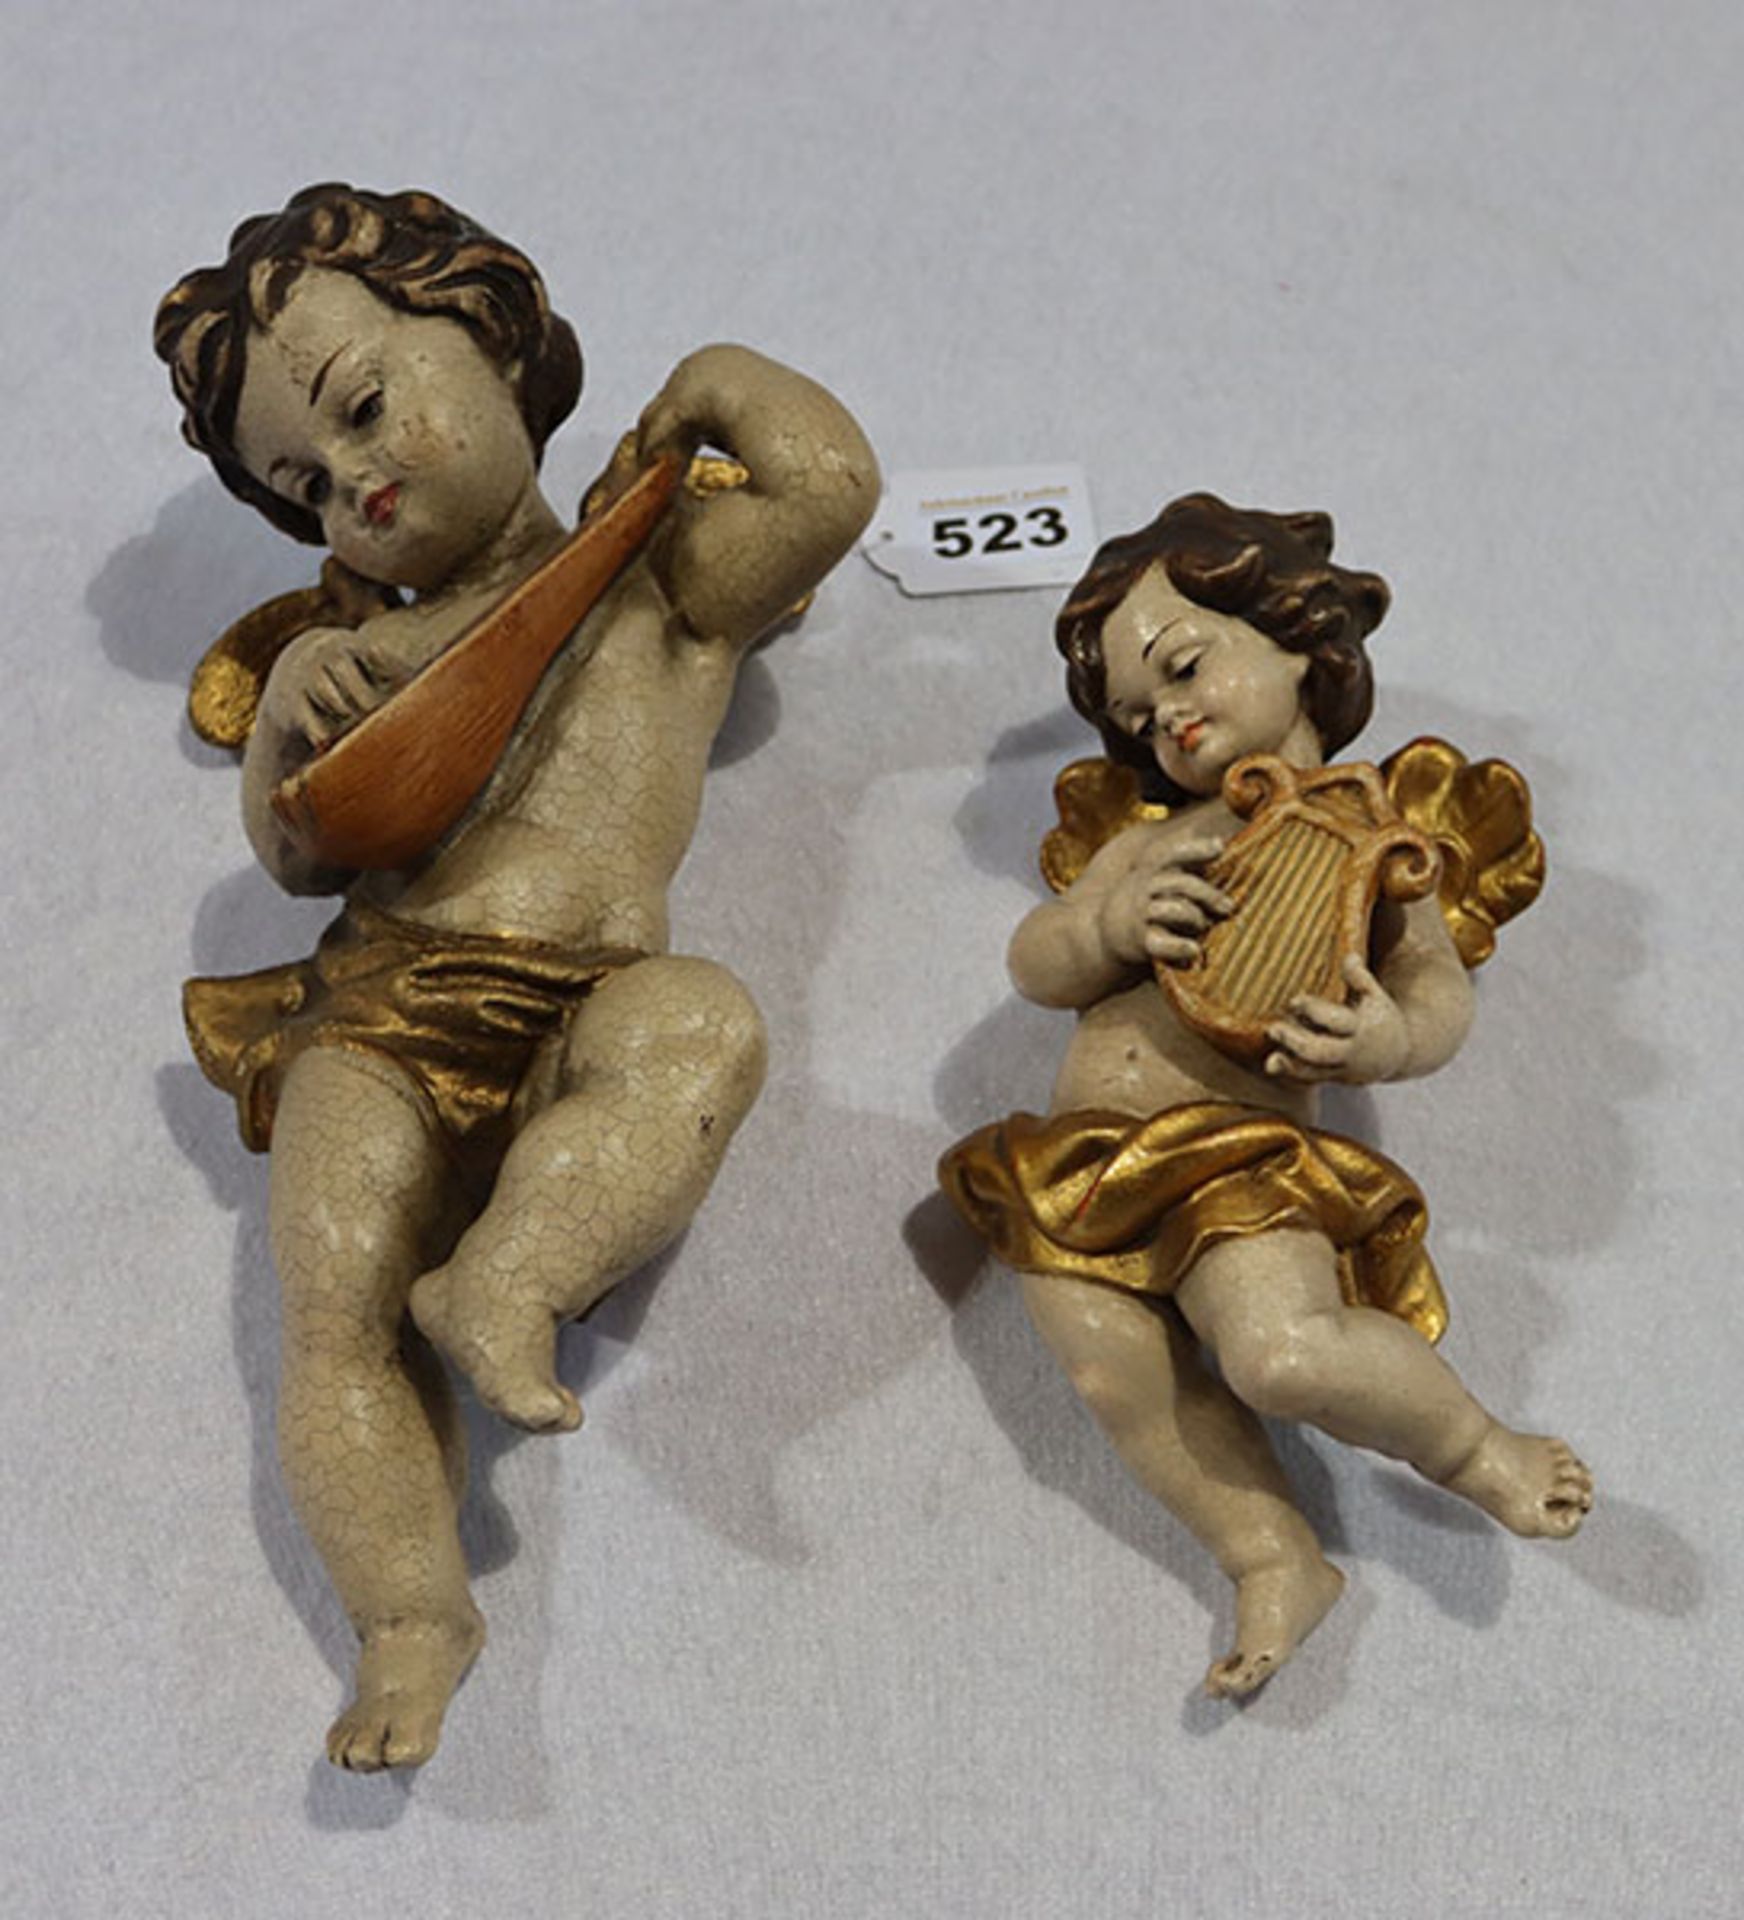 2 Holzfiguren 'Musizierende Engel', farbig gefaßt, H 23/30 cm, teils bestossen und berieben